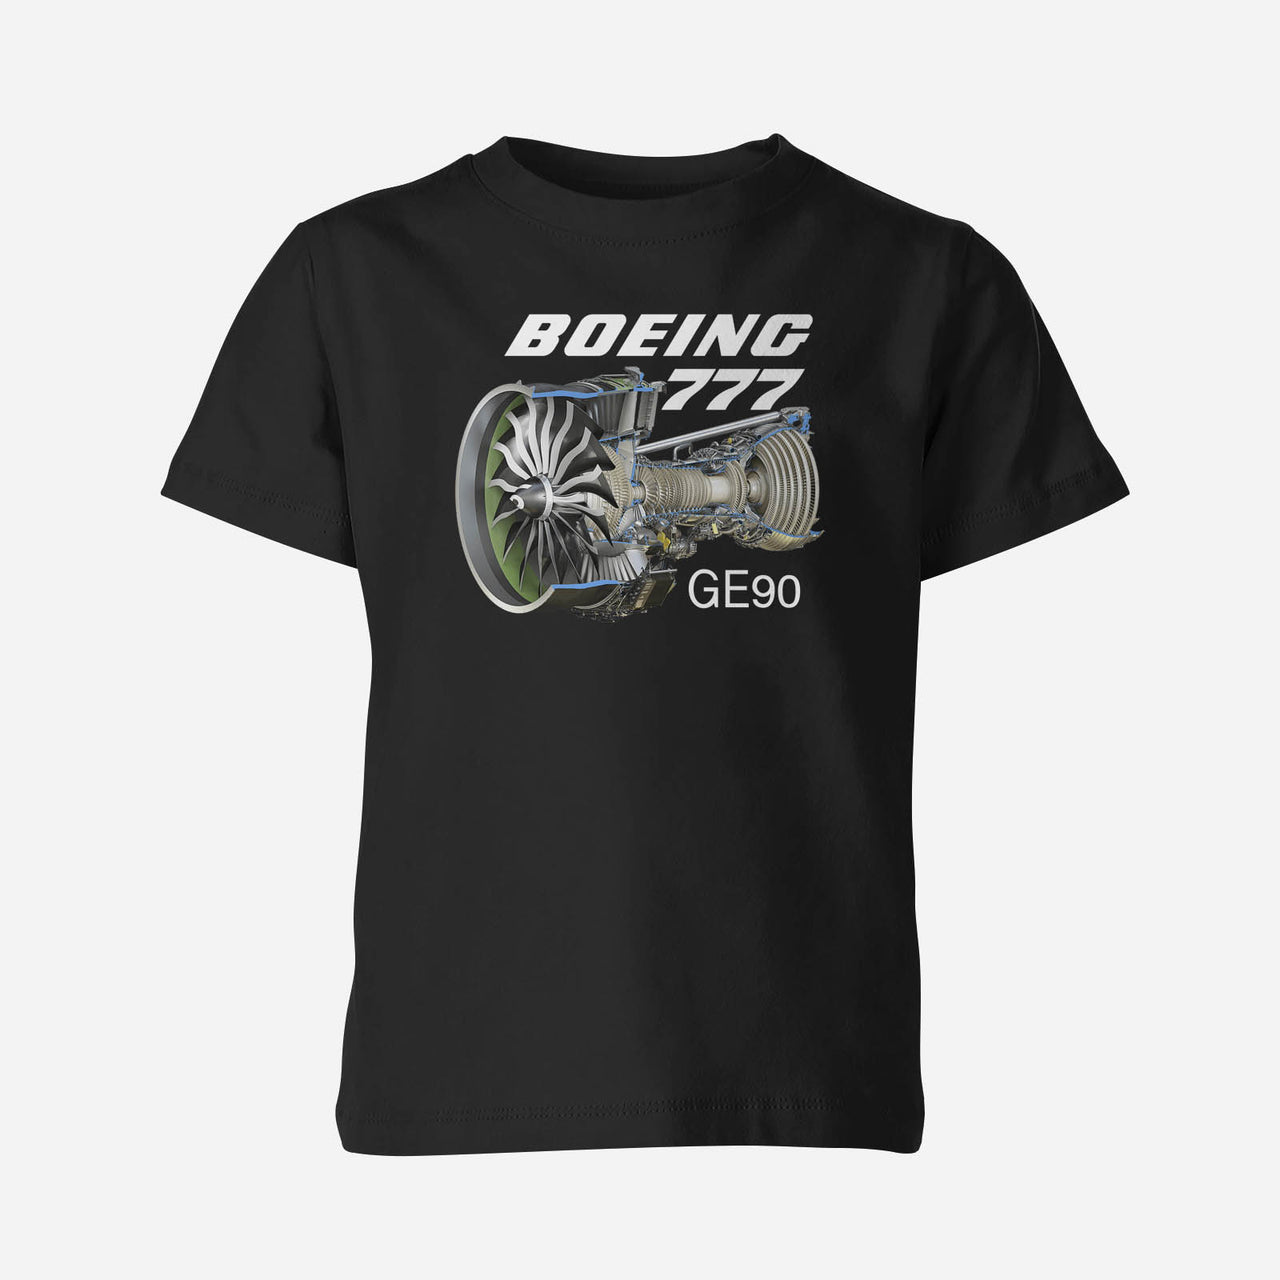 Boeing 777 & GE90 Engine Designed Children T-Shirts